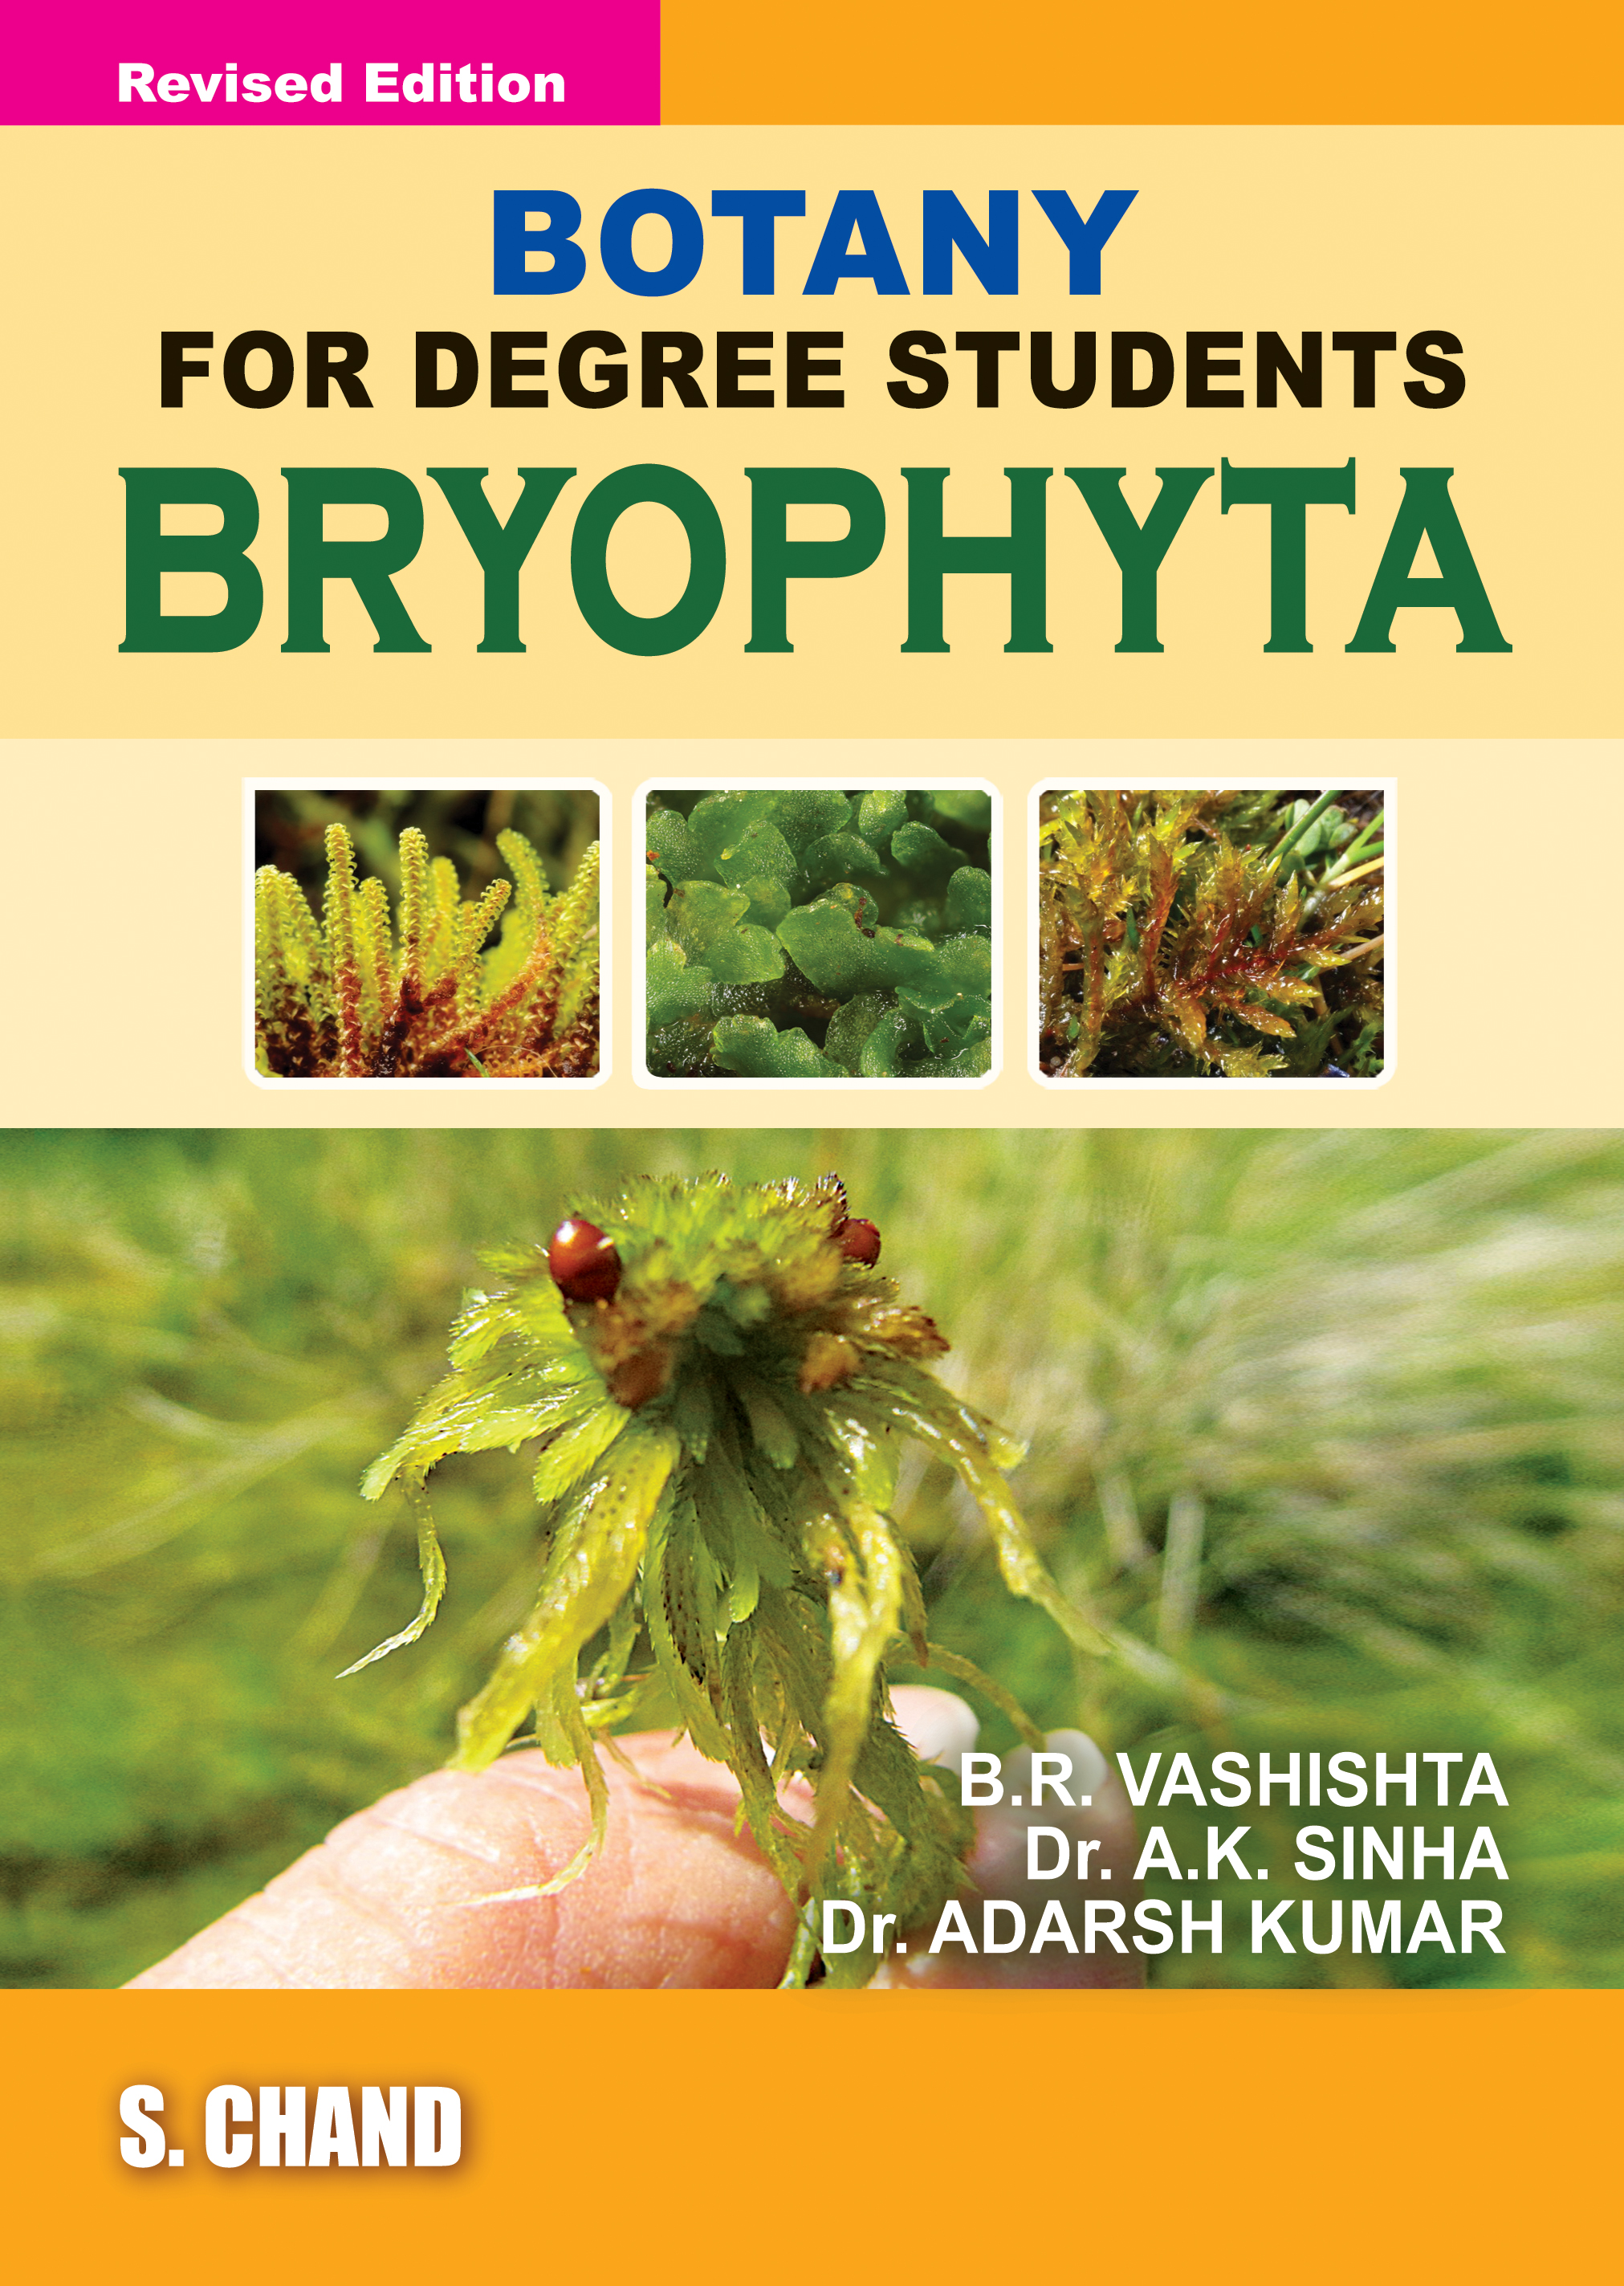 Botany for Degree Students - BRYOPHYTA